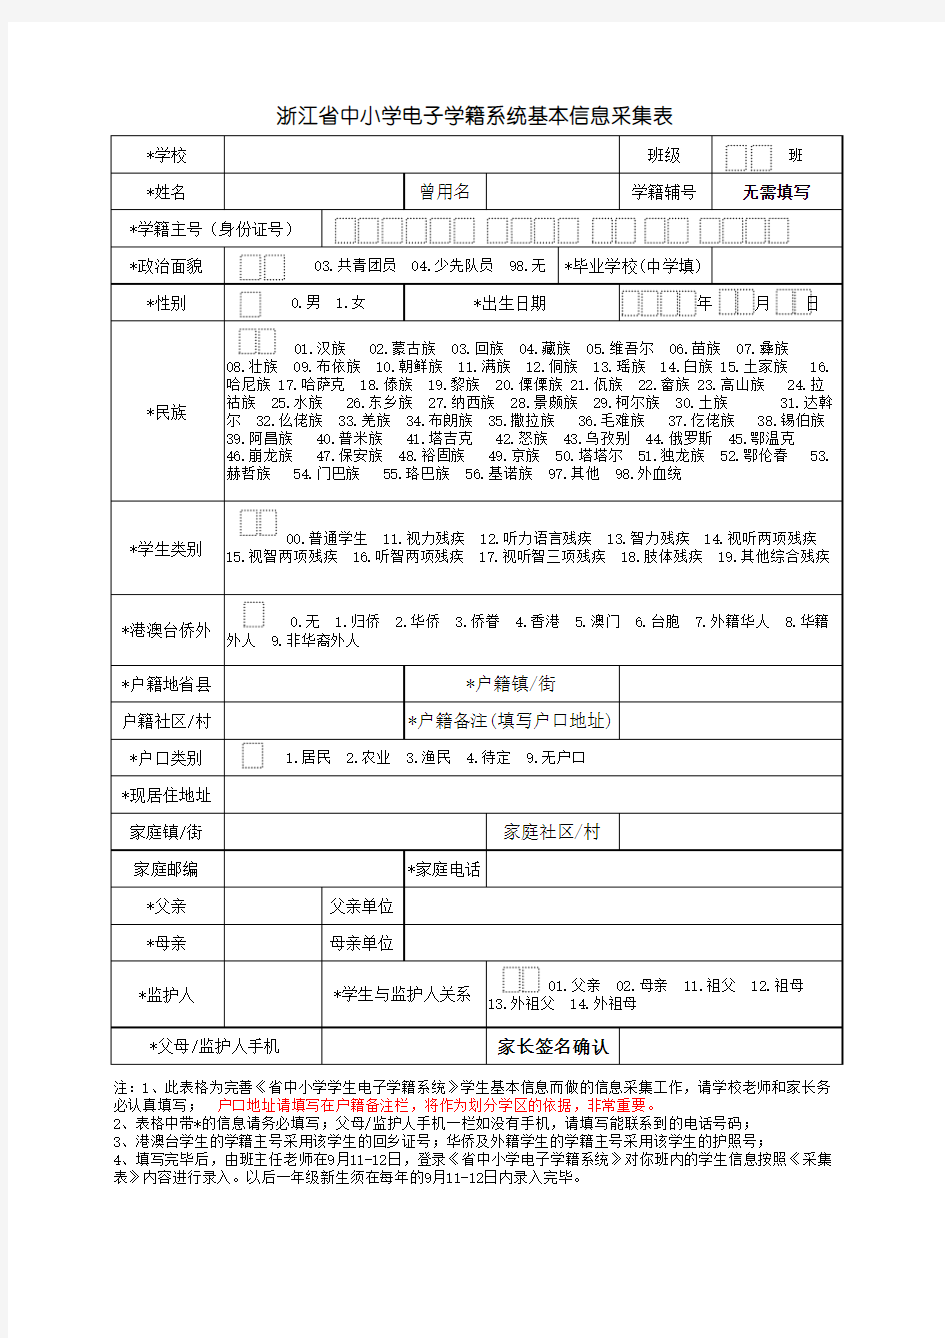 浙江省中小学学生电子学籍系统基本信息采集表